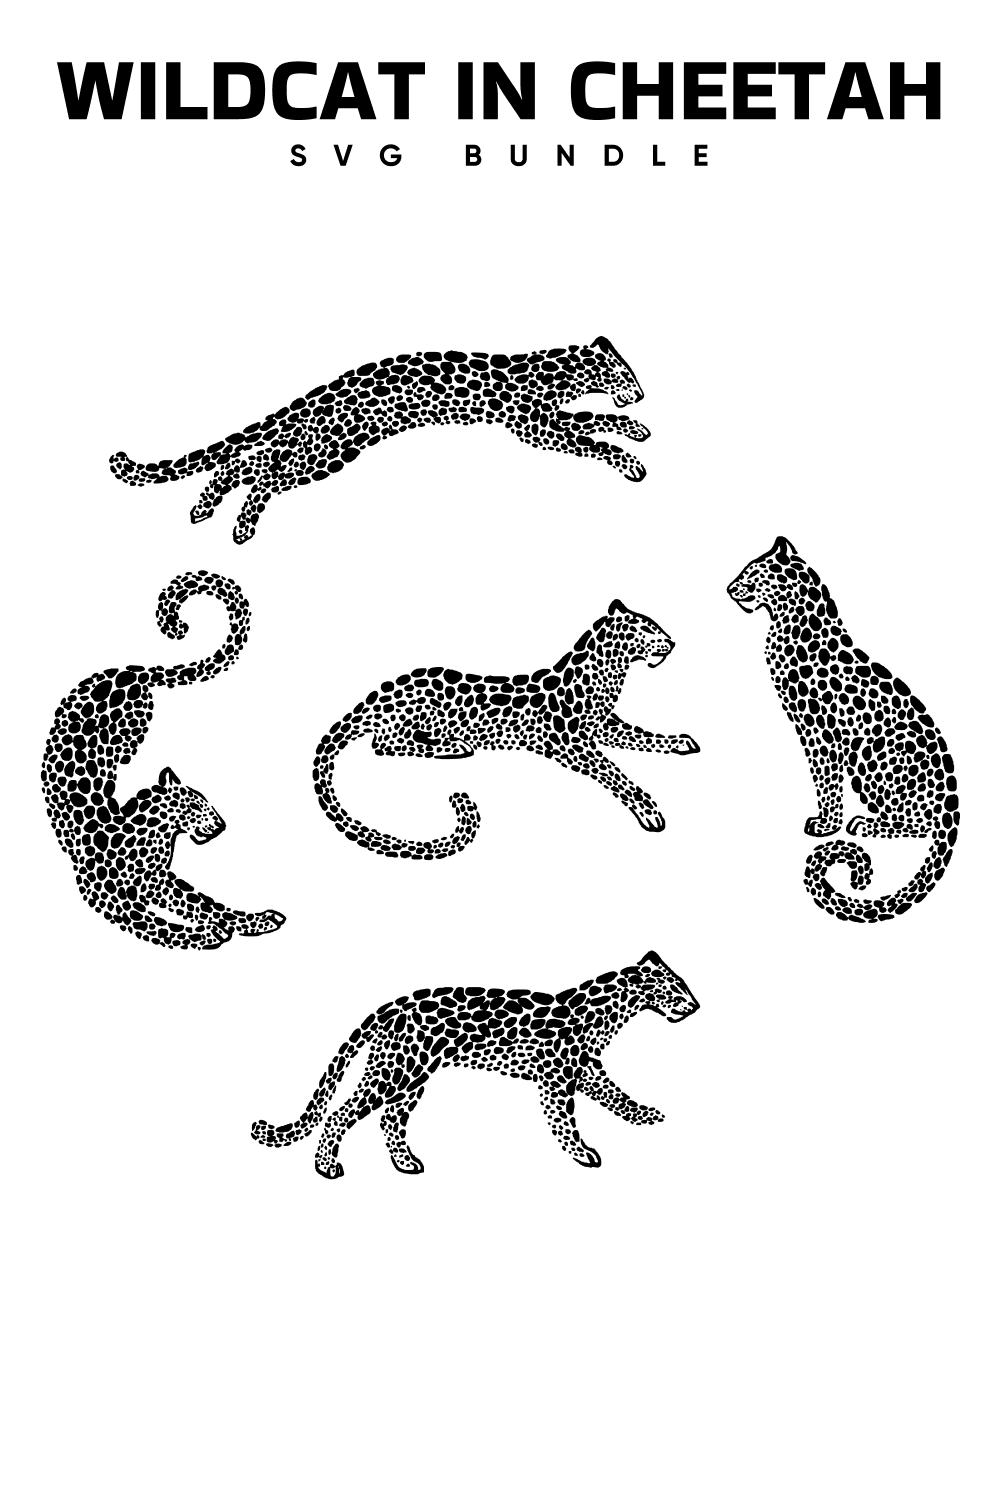 Black and white image of three cheetah.